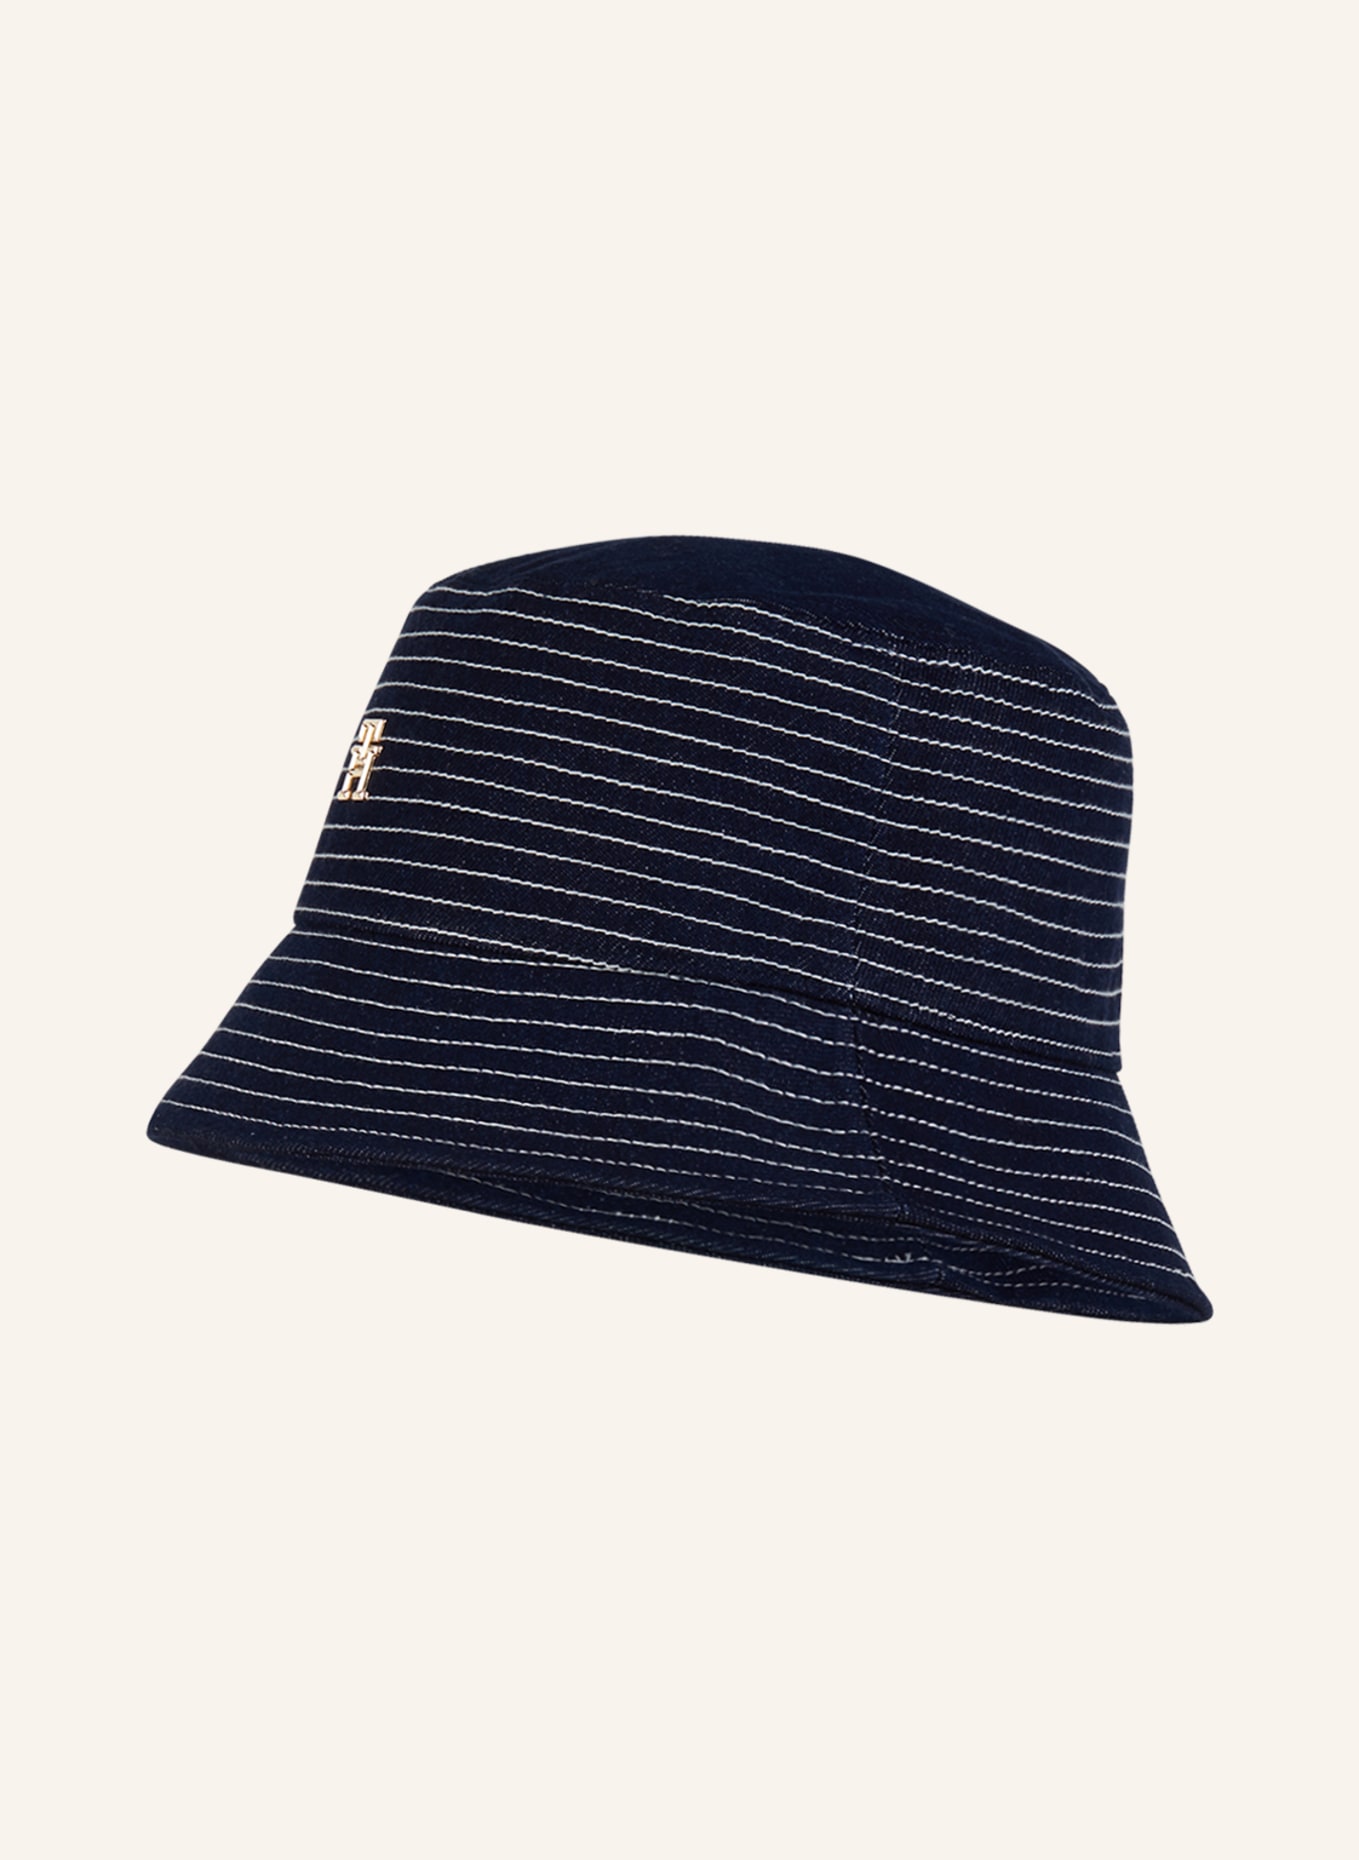 TOMMY HILFIGER Bucket hat, Color: DARK BLUE/ WHITE (Image 1)